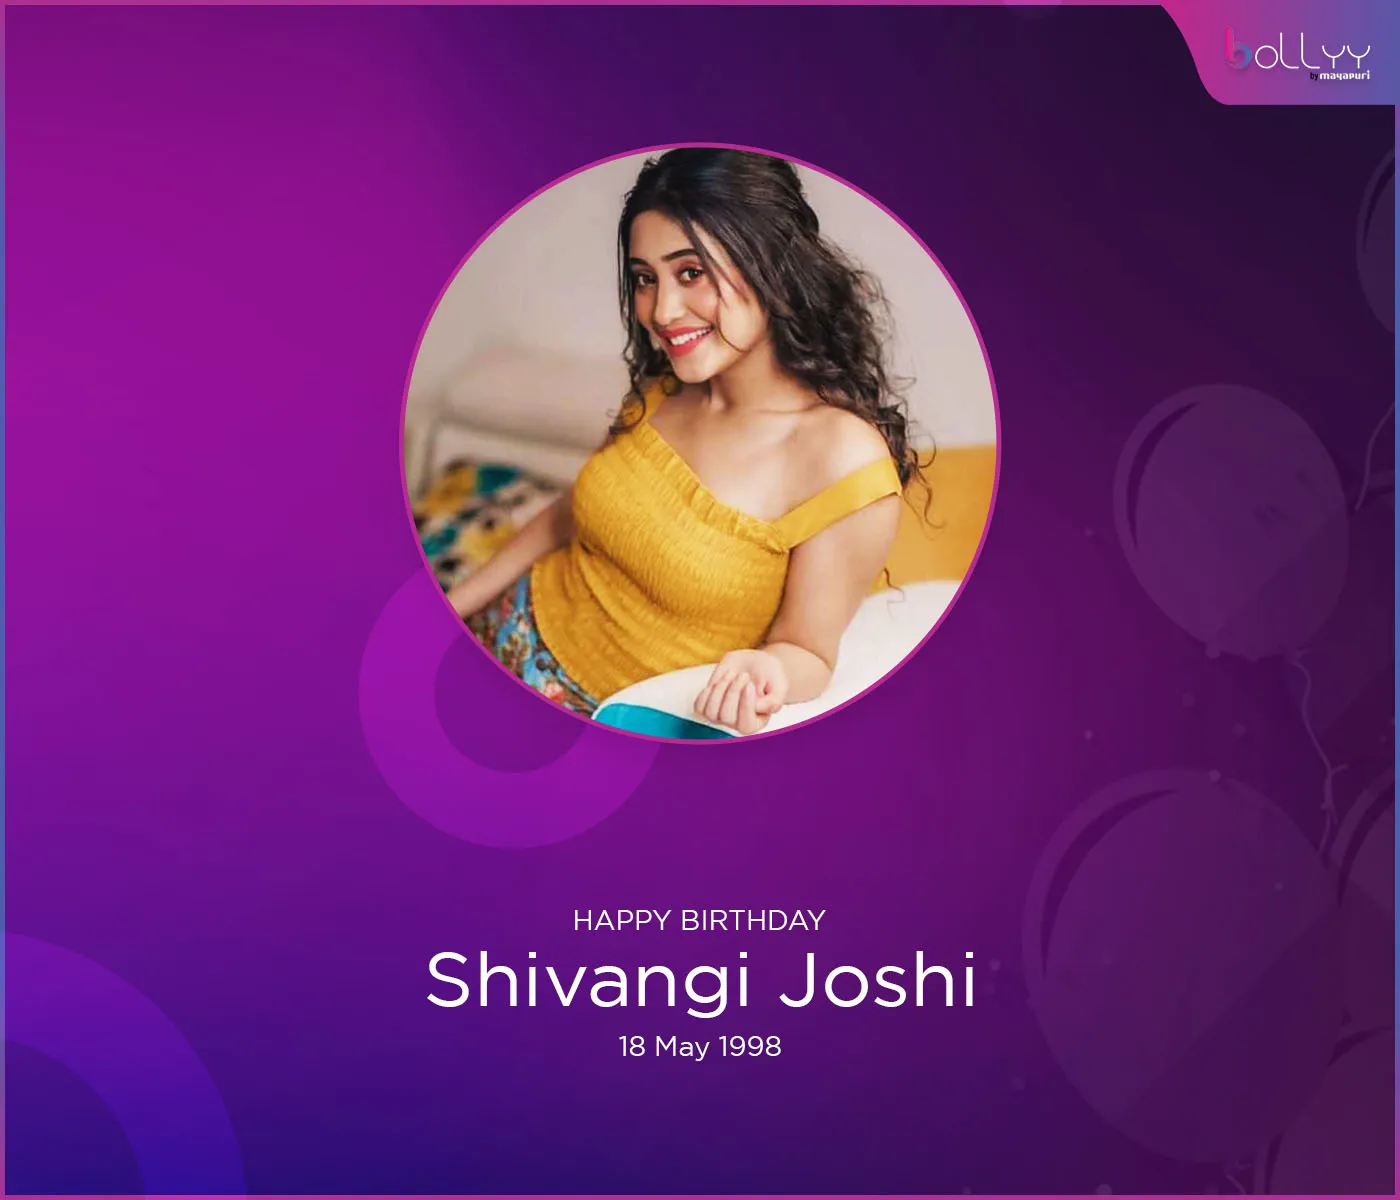 Shivangi Joshi birthday